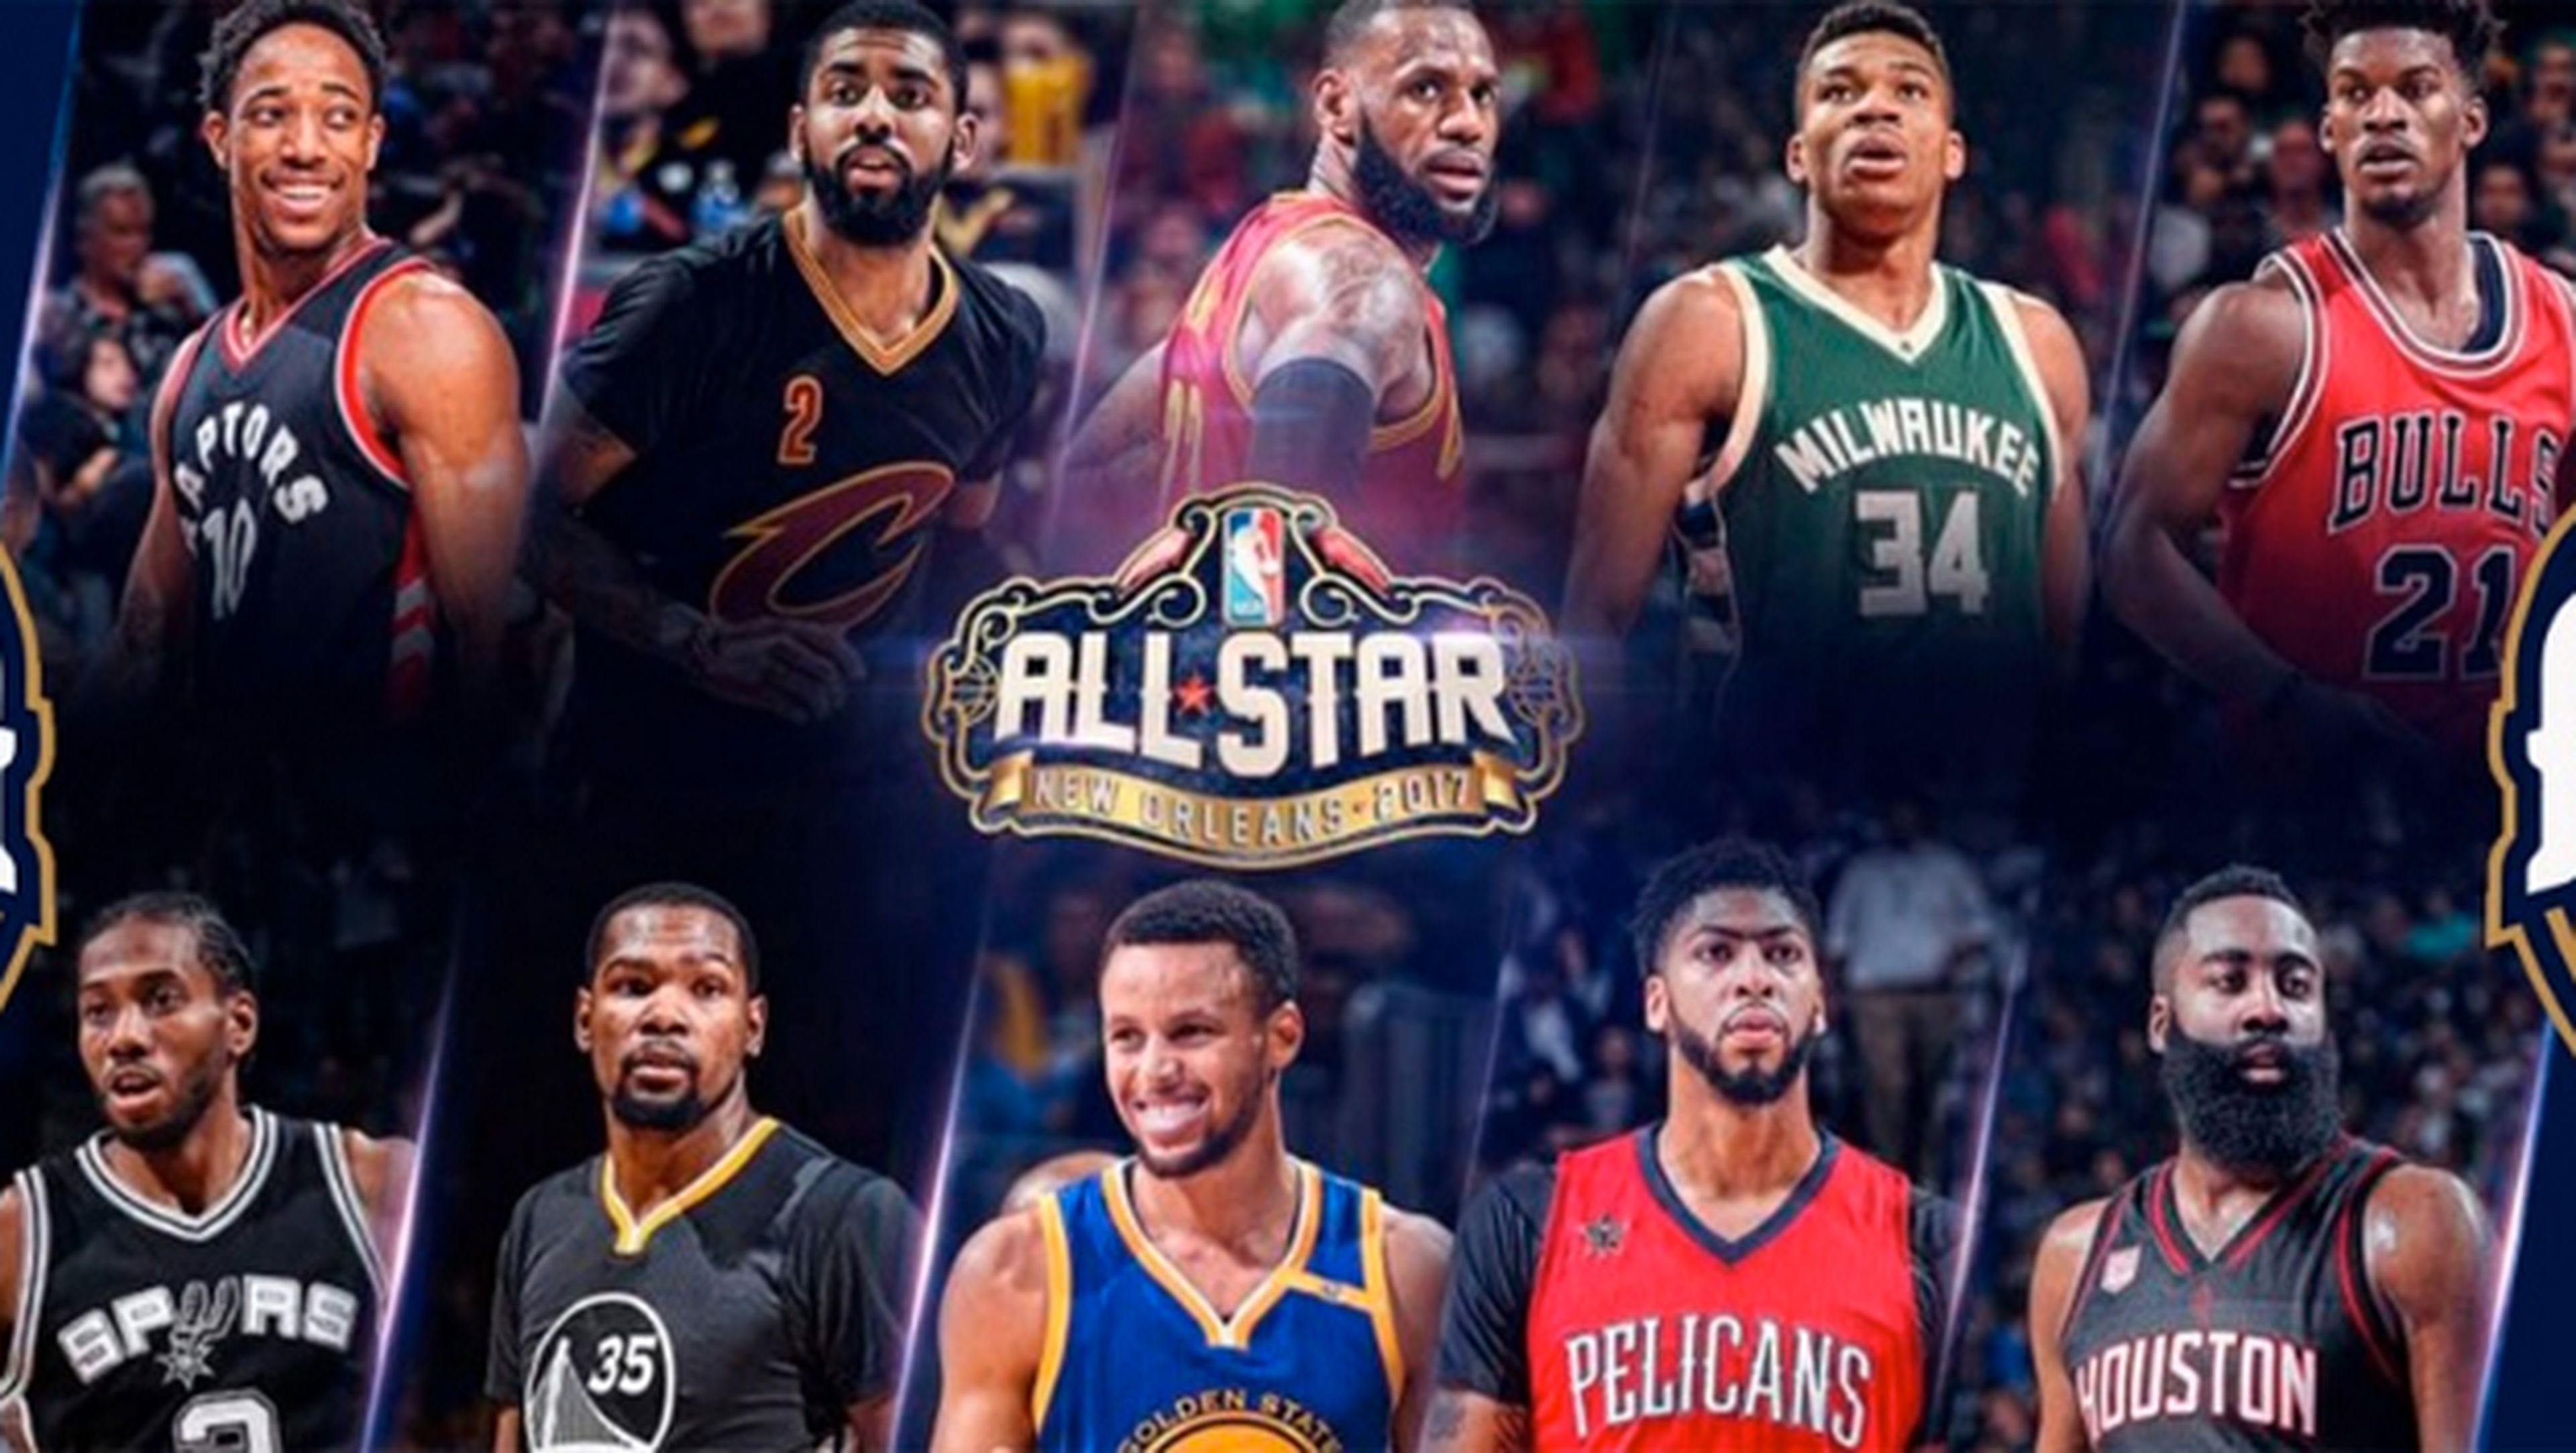 Dónde y cómo ver en directo online el NBA All Star 2017